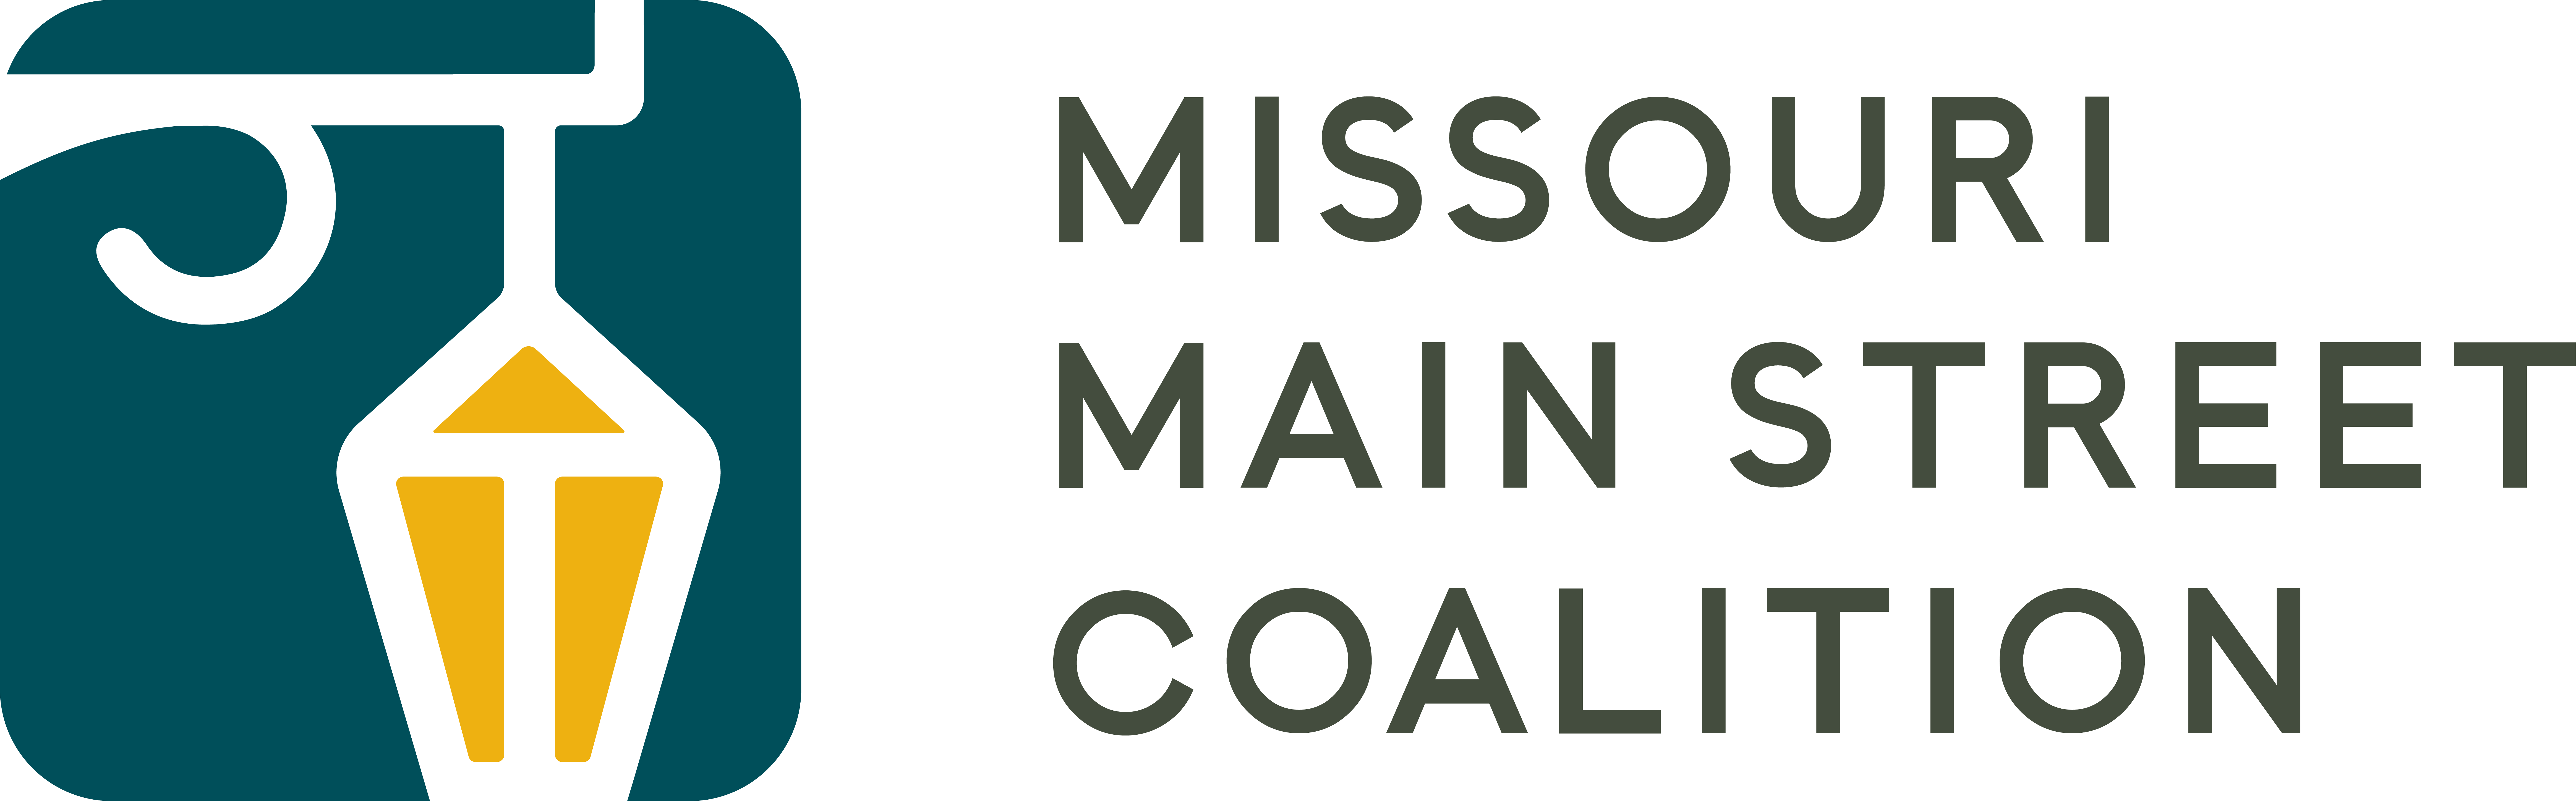 Missouri Main Street Coalition